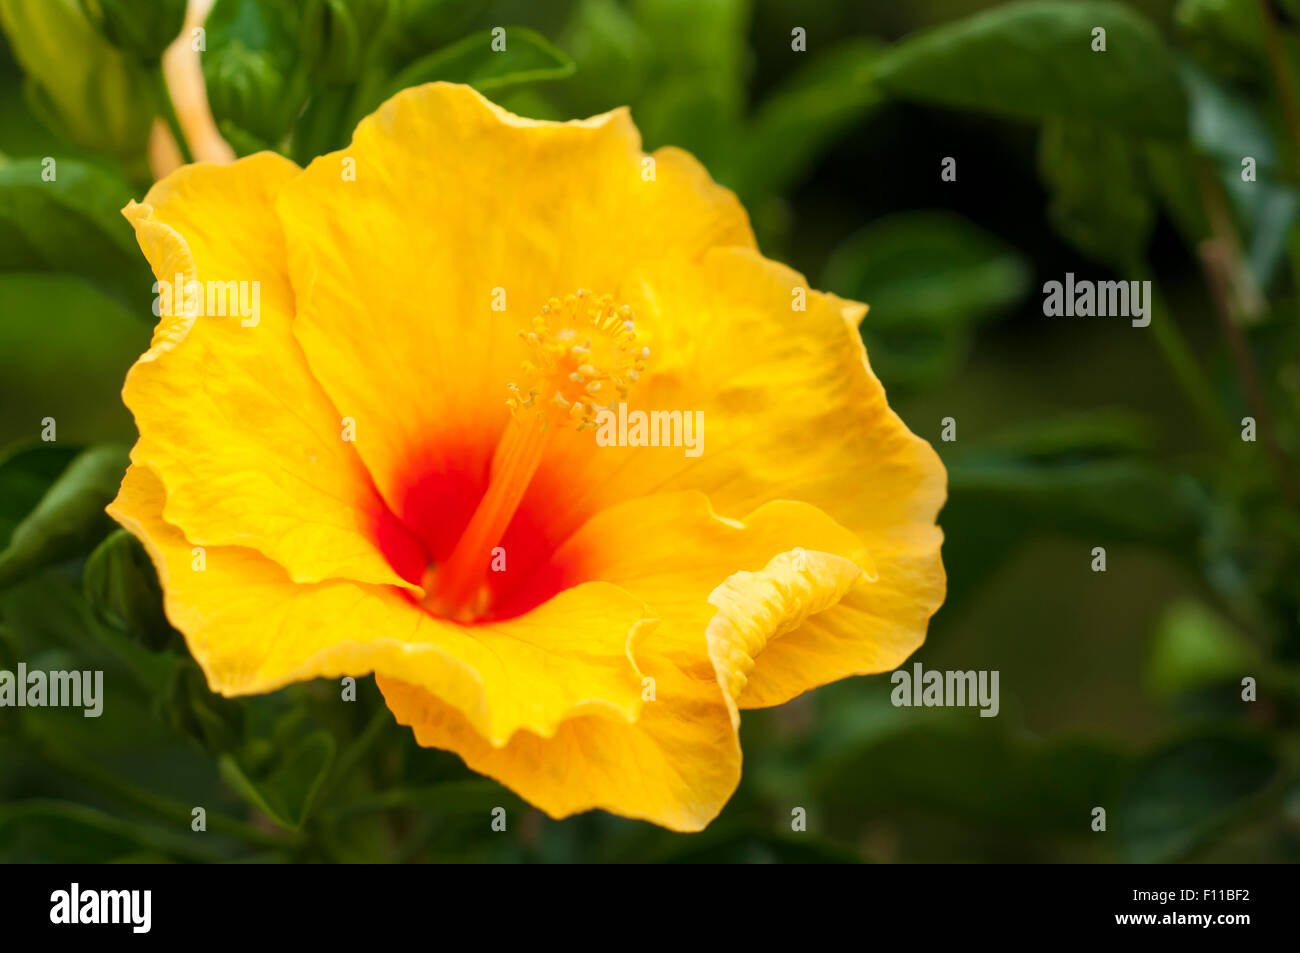 Fleur d'hibiscus jaune à la stigmatisation. Pris sur le Maj 23, 2015 Banque D'Images